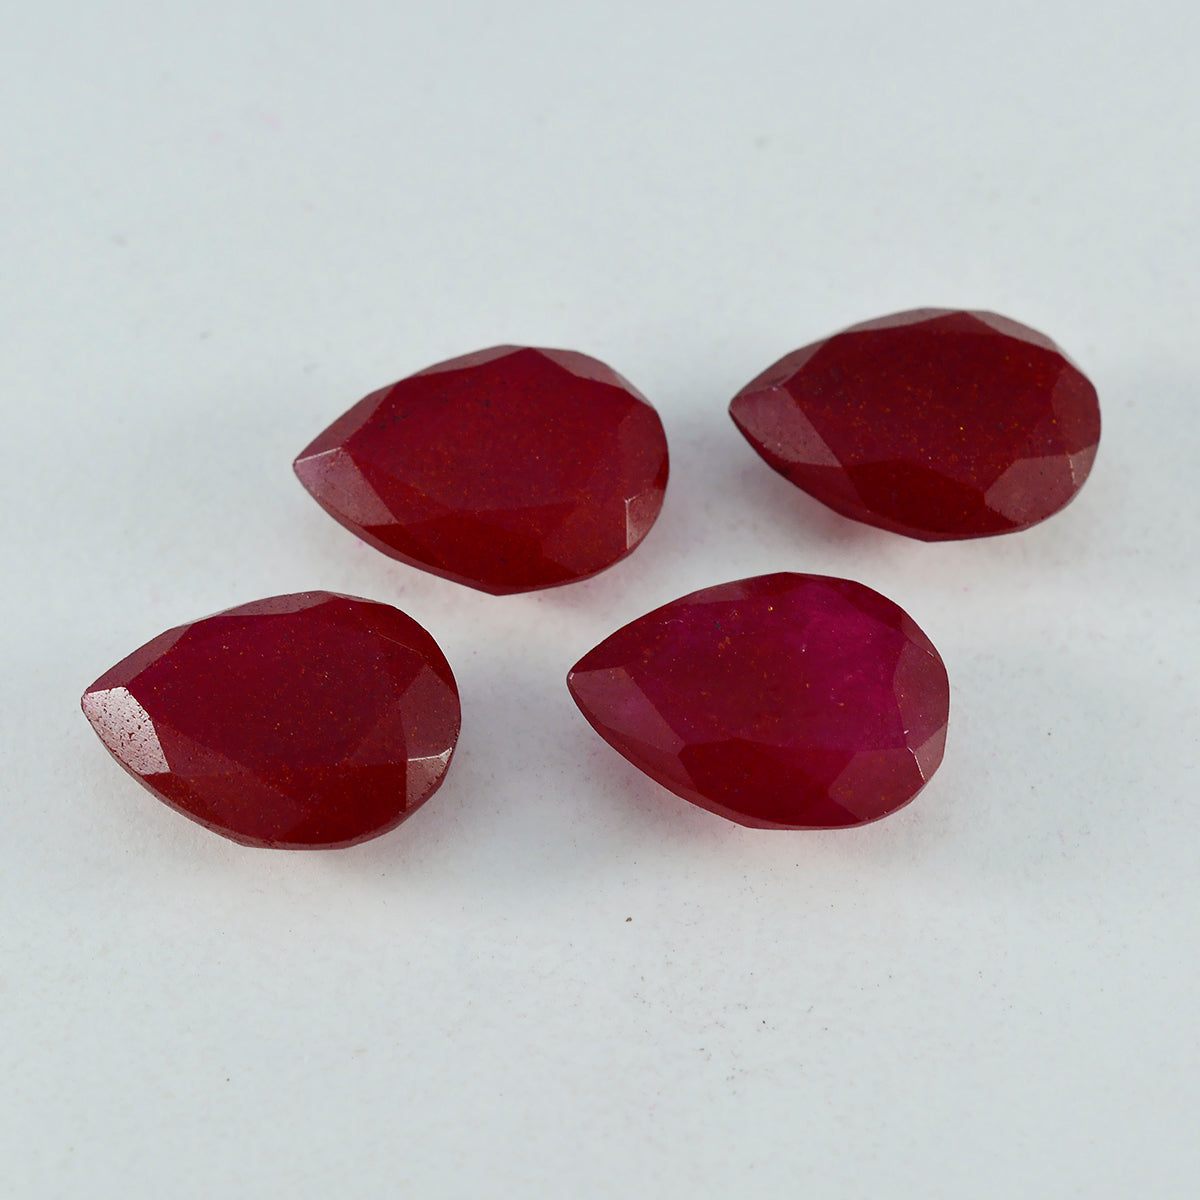 riyogems 1 pezzo di diaspro rosso autentico sfaccettato 8x12 mm a forma di pera, gemma sfusa di grande qualità